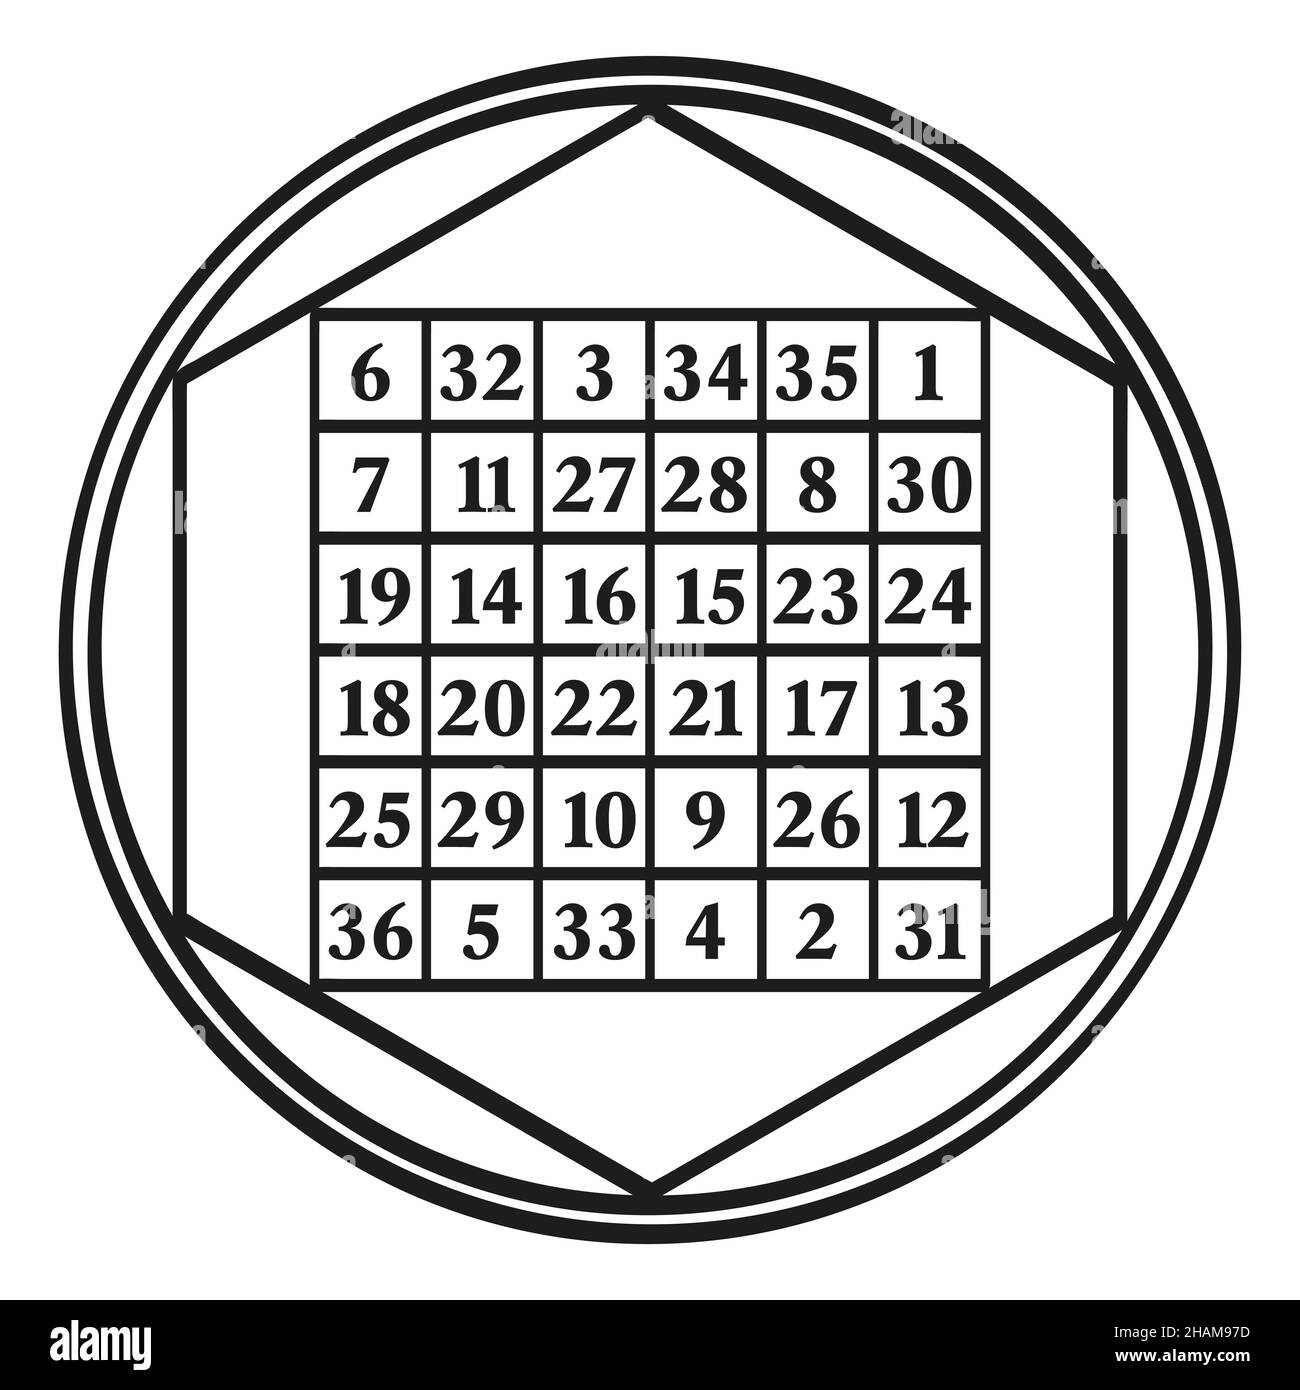 Ordnen Sie sechs magische Quadrat, ein Symbol, zugeordnet zu der  astrologischen Sonne, mit der magischen Konstante 111. Ein magisches  Quadrat mit den Zahlen 1 bis 36 Stockfotografie - Alamy